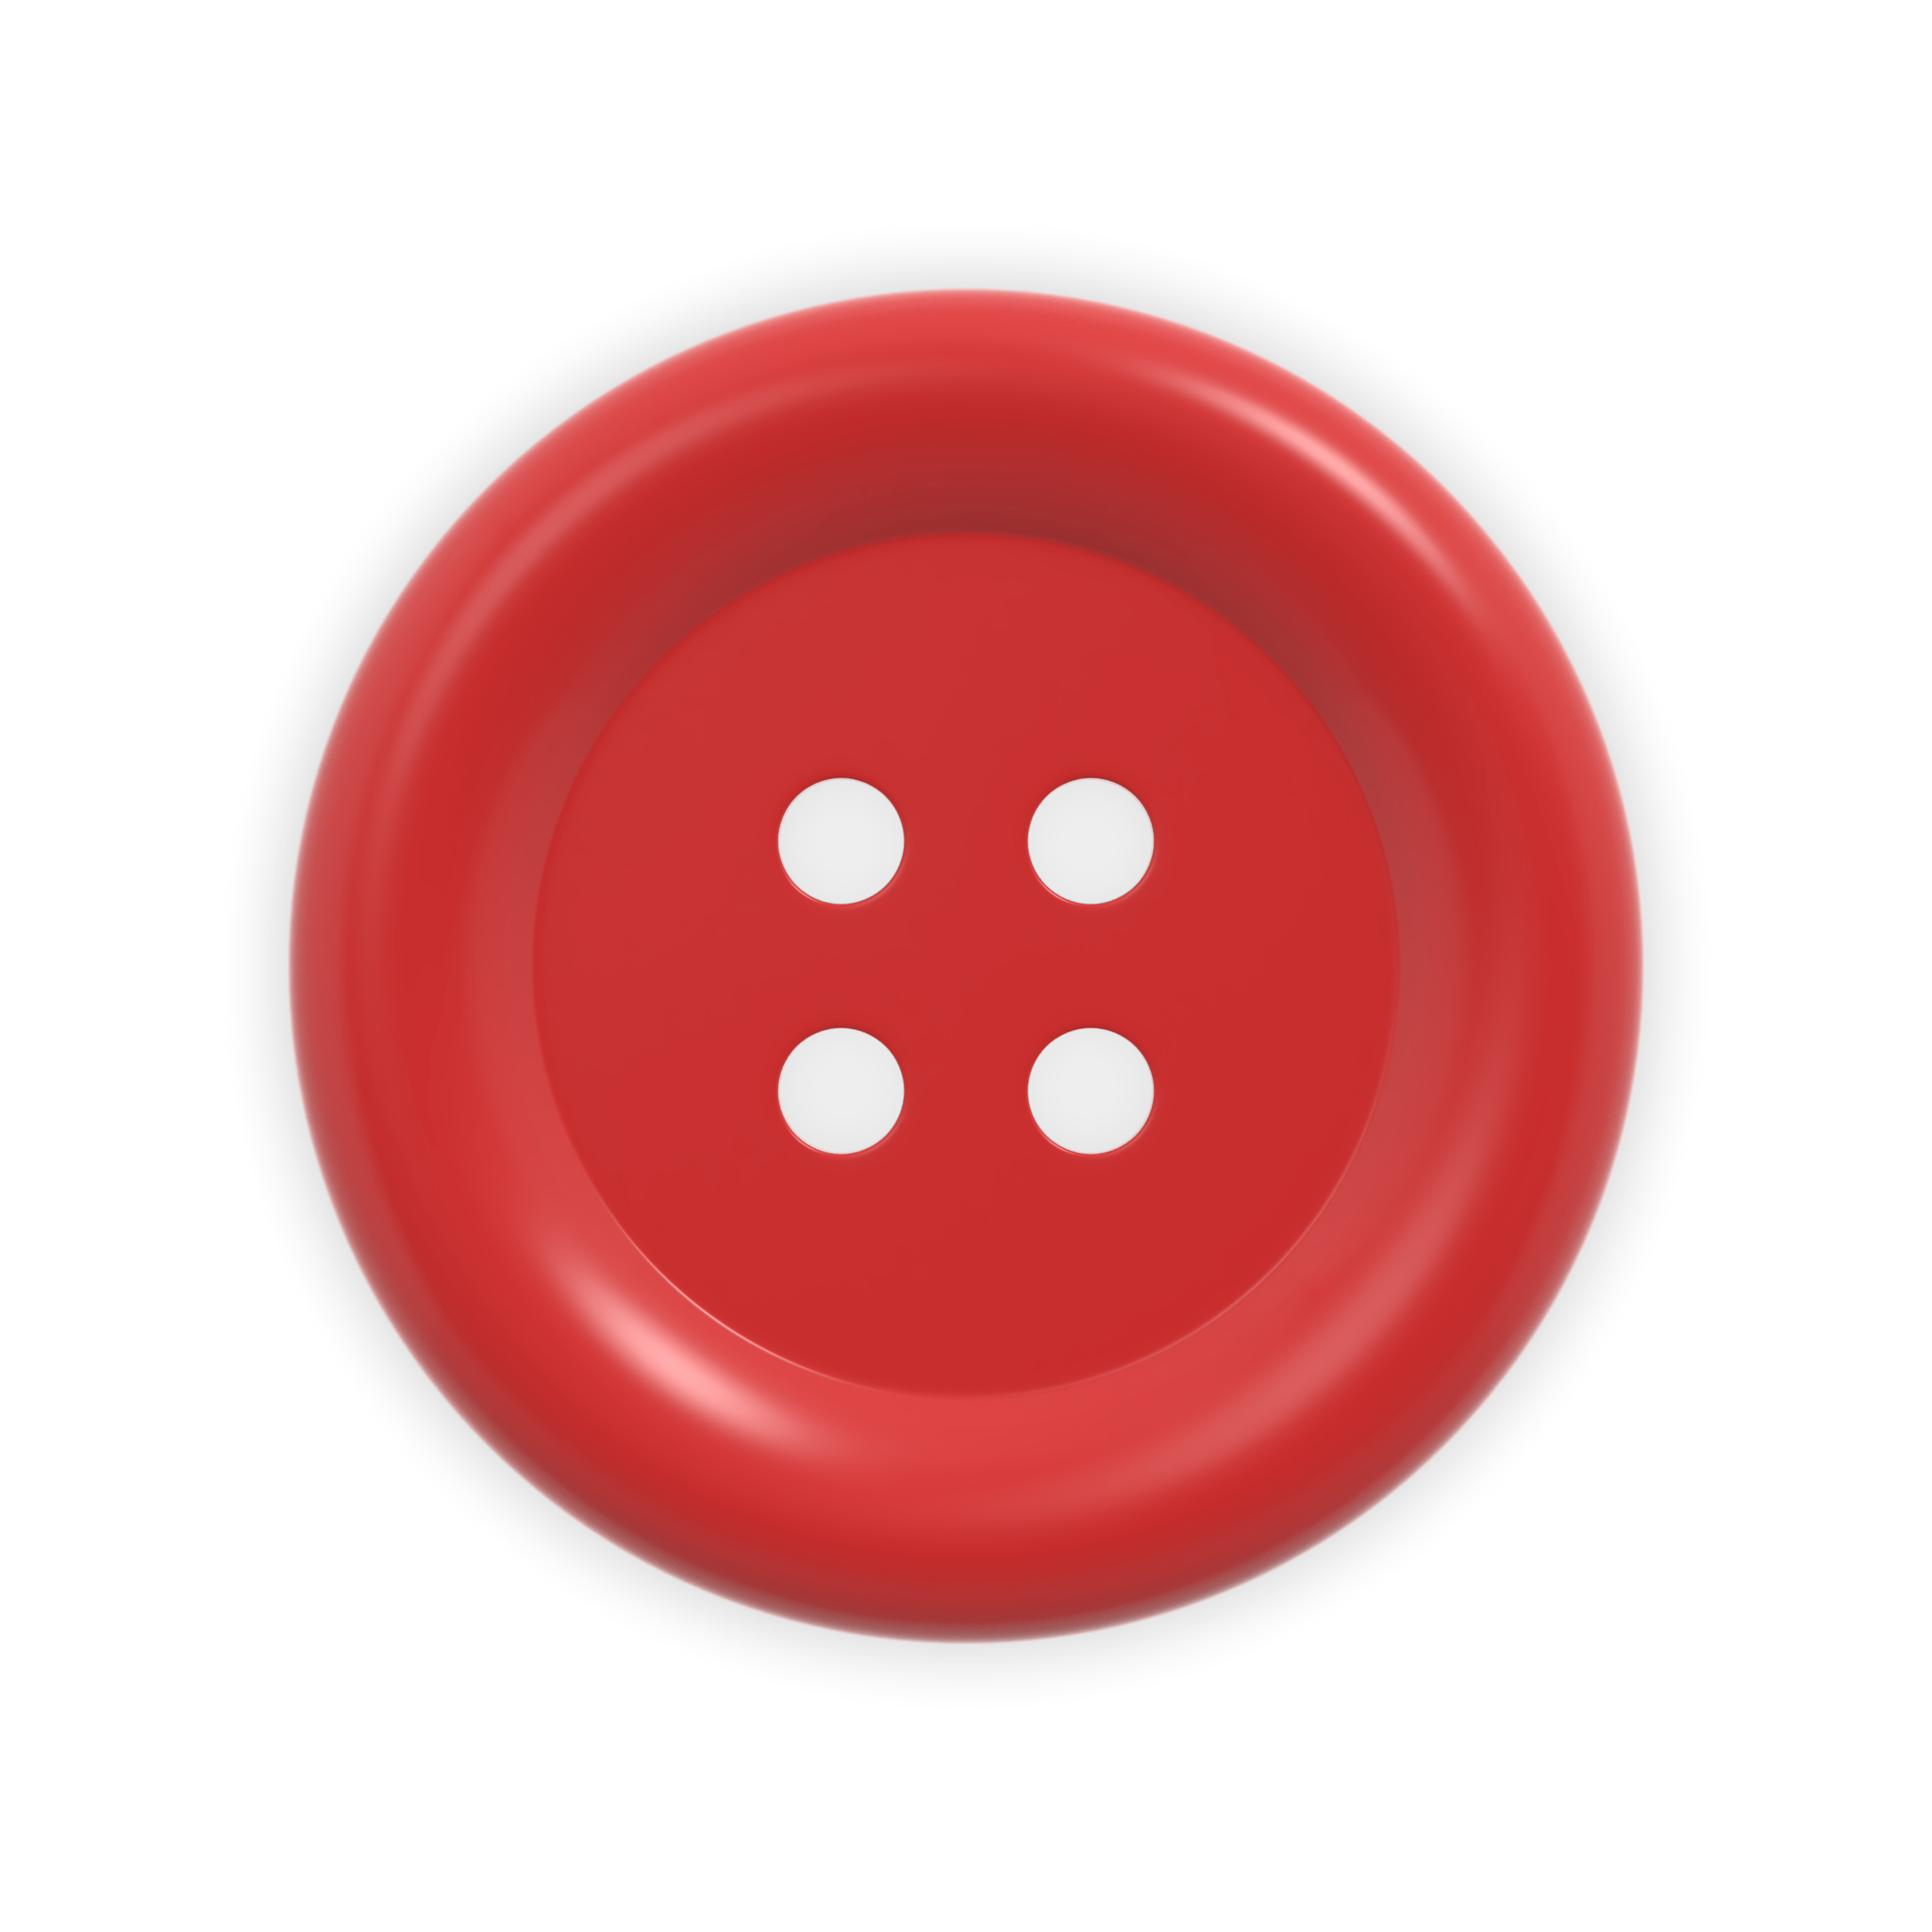 button by GeoGo | 3DOcean